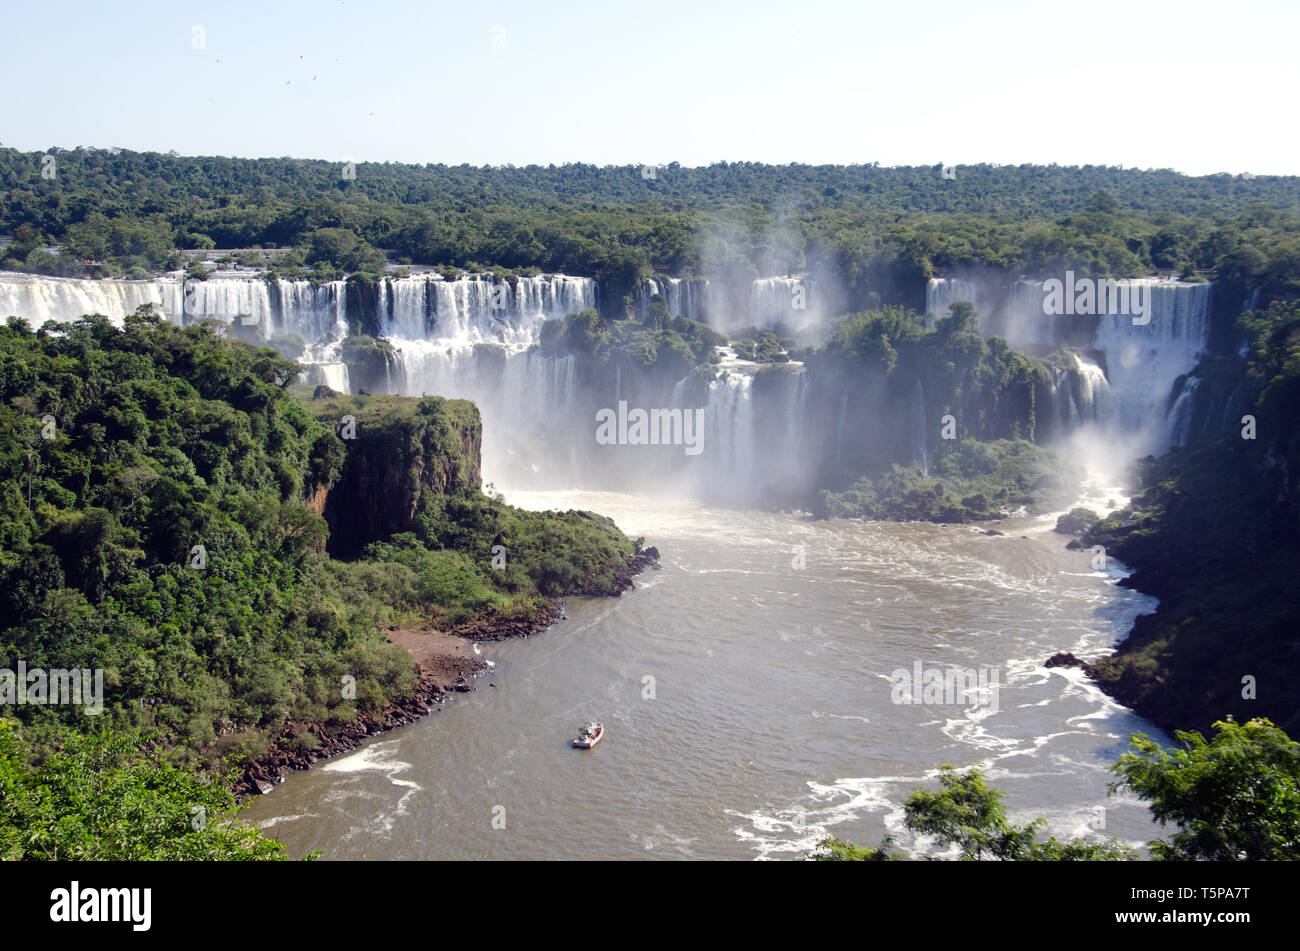 Las espectaculares Cataratas de Iguaçu visto desde el lado brasileño Foto de stock